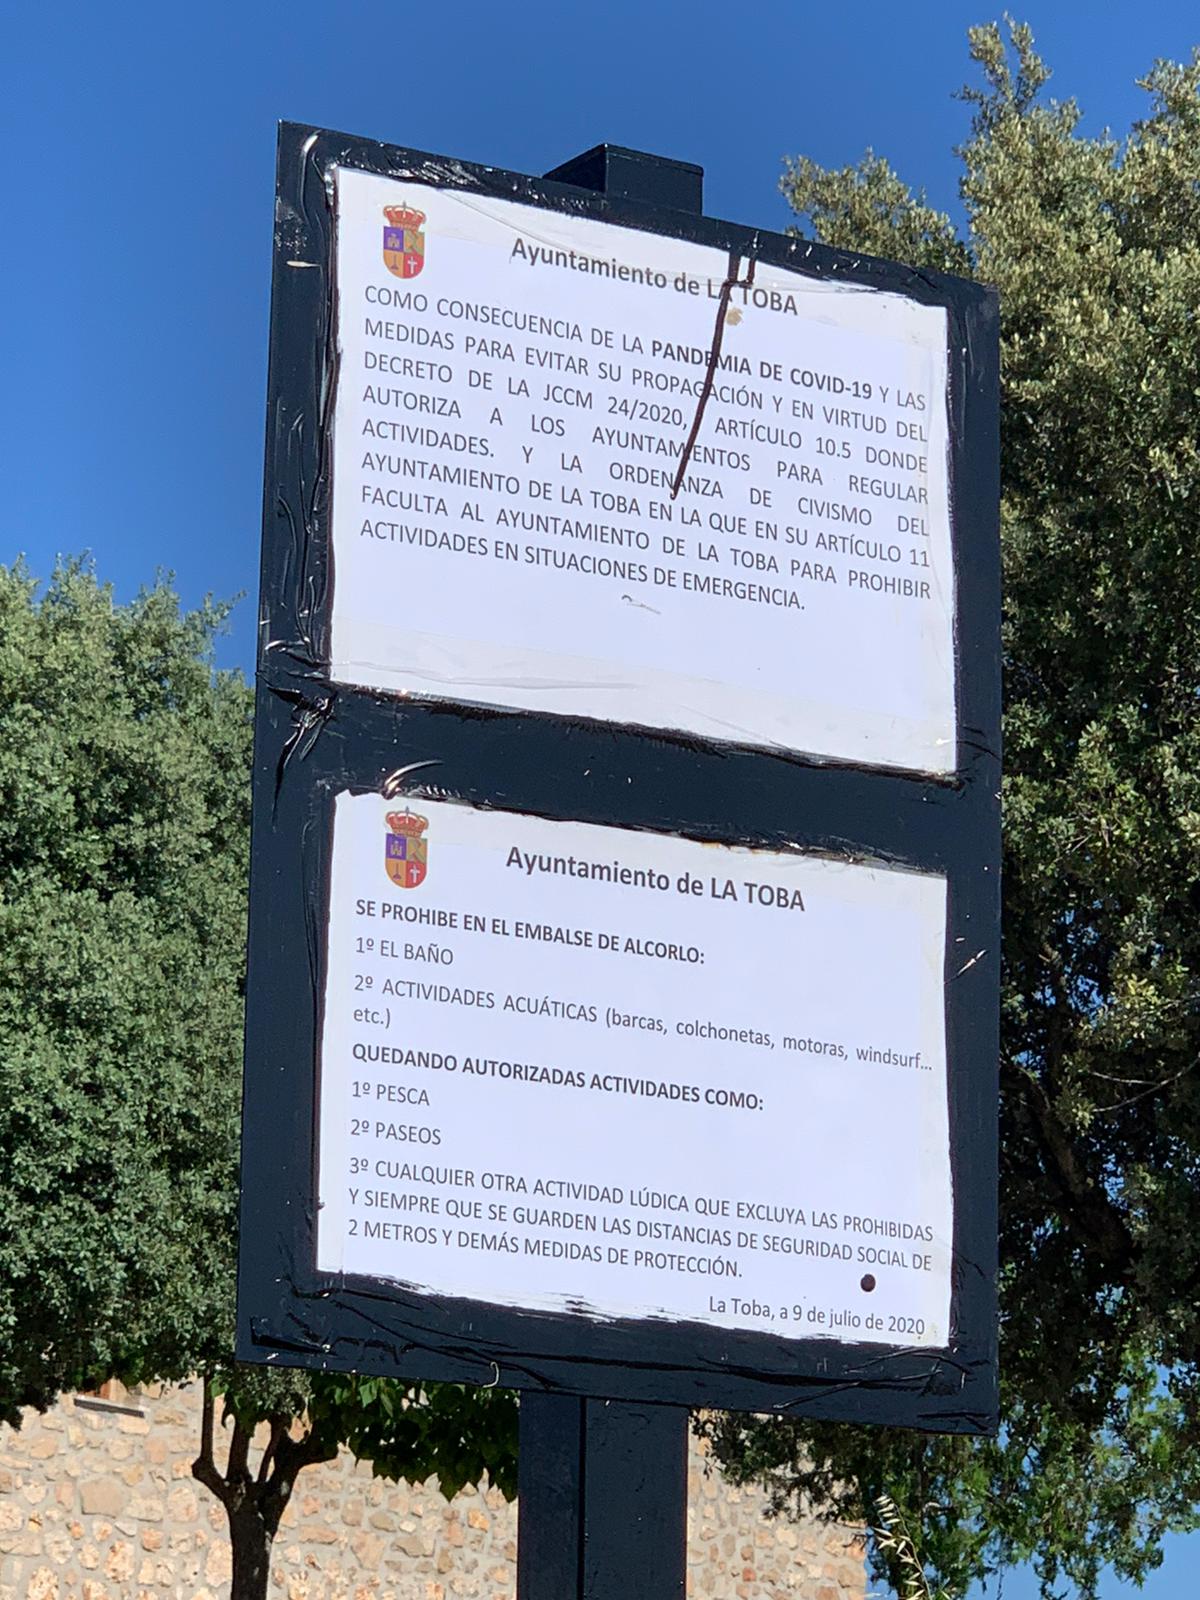 Cartel con las prohibiciones que aplica el Ayuntamiento de La Toba al embalse de Alcorlo.